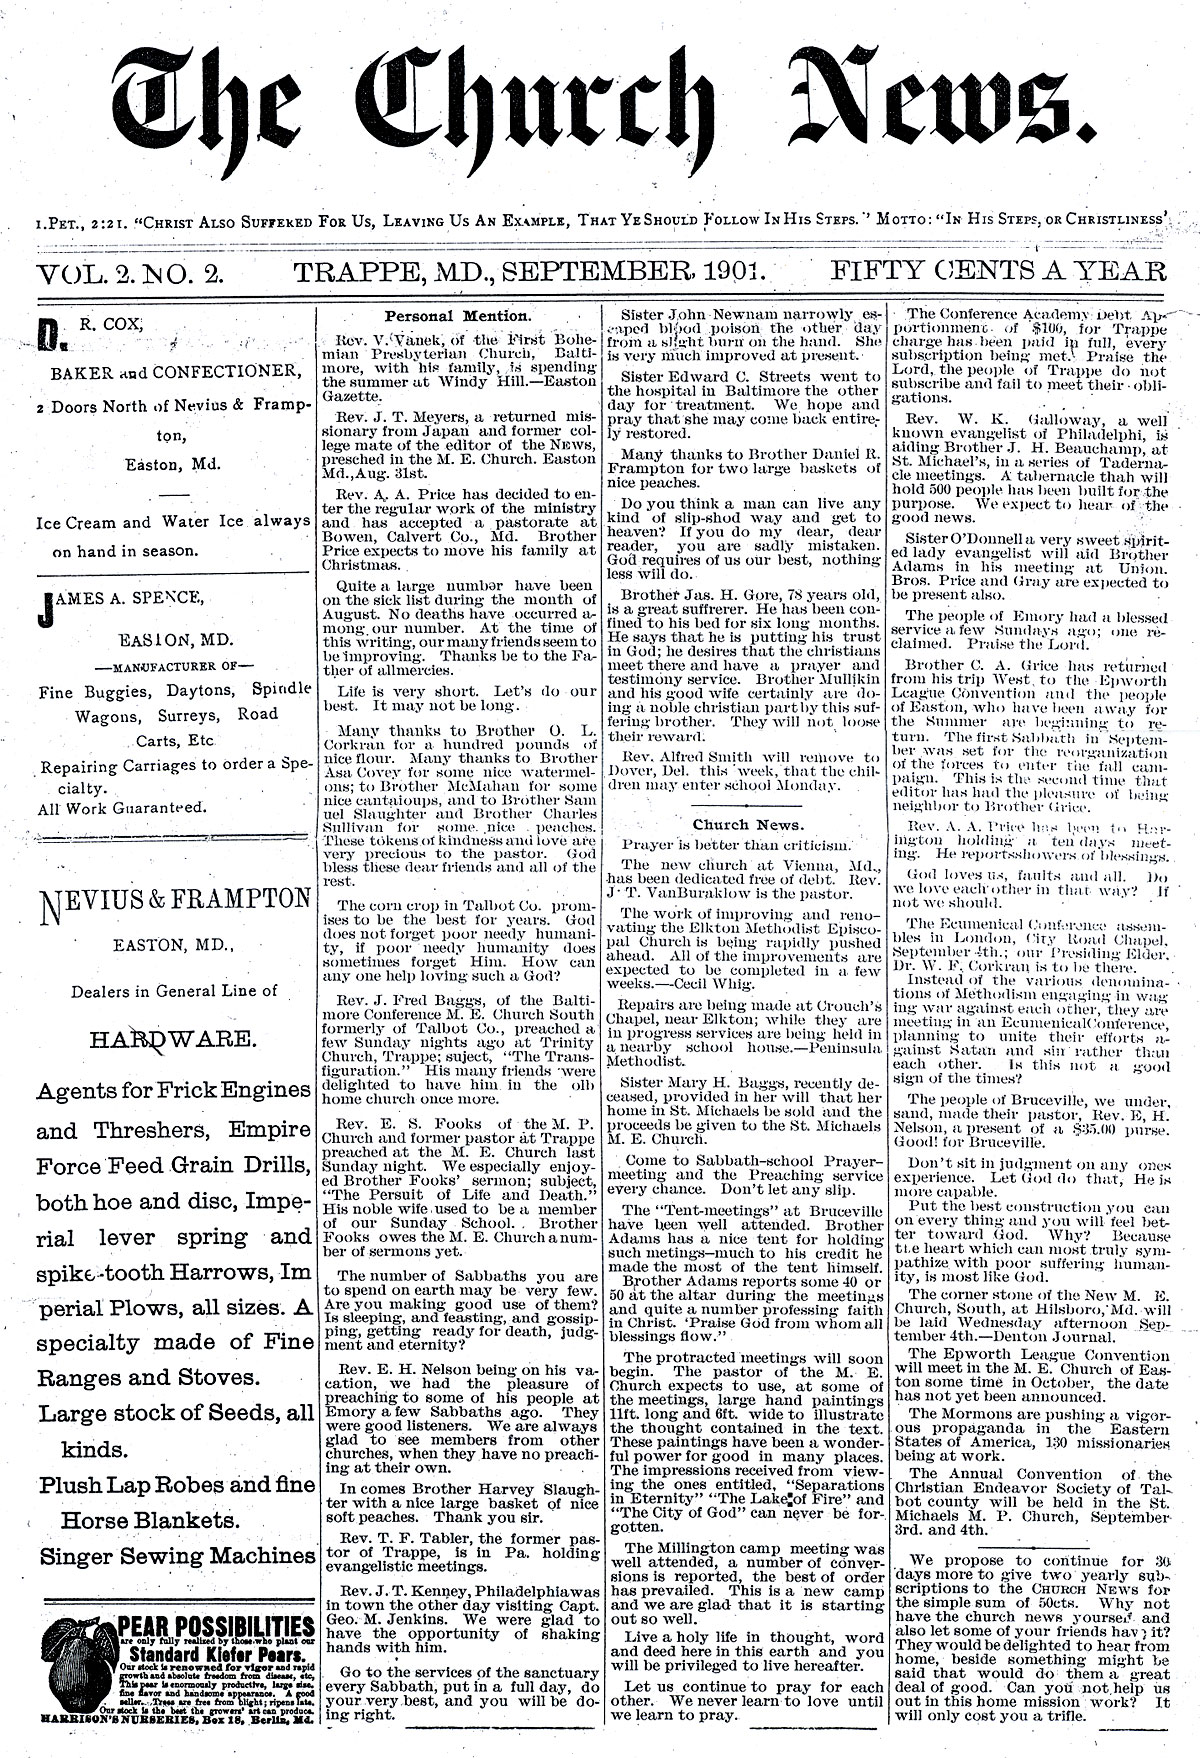 The Church News 1901 pg.1